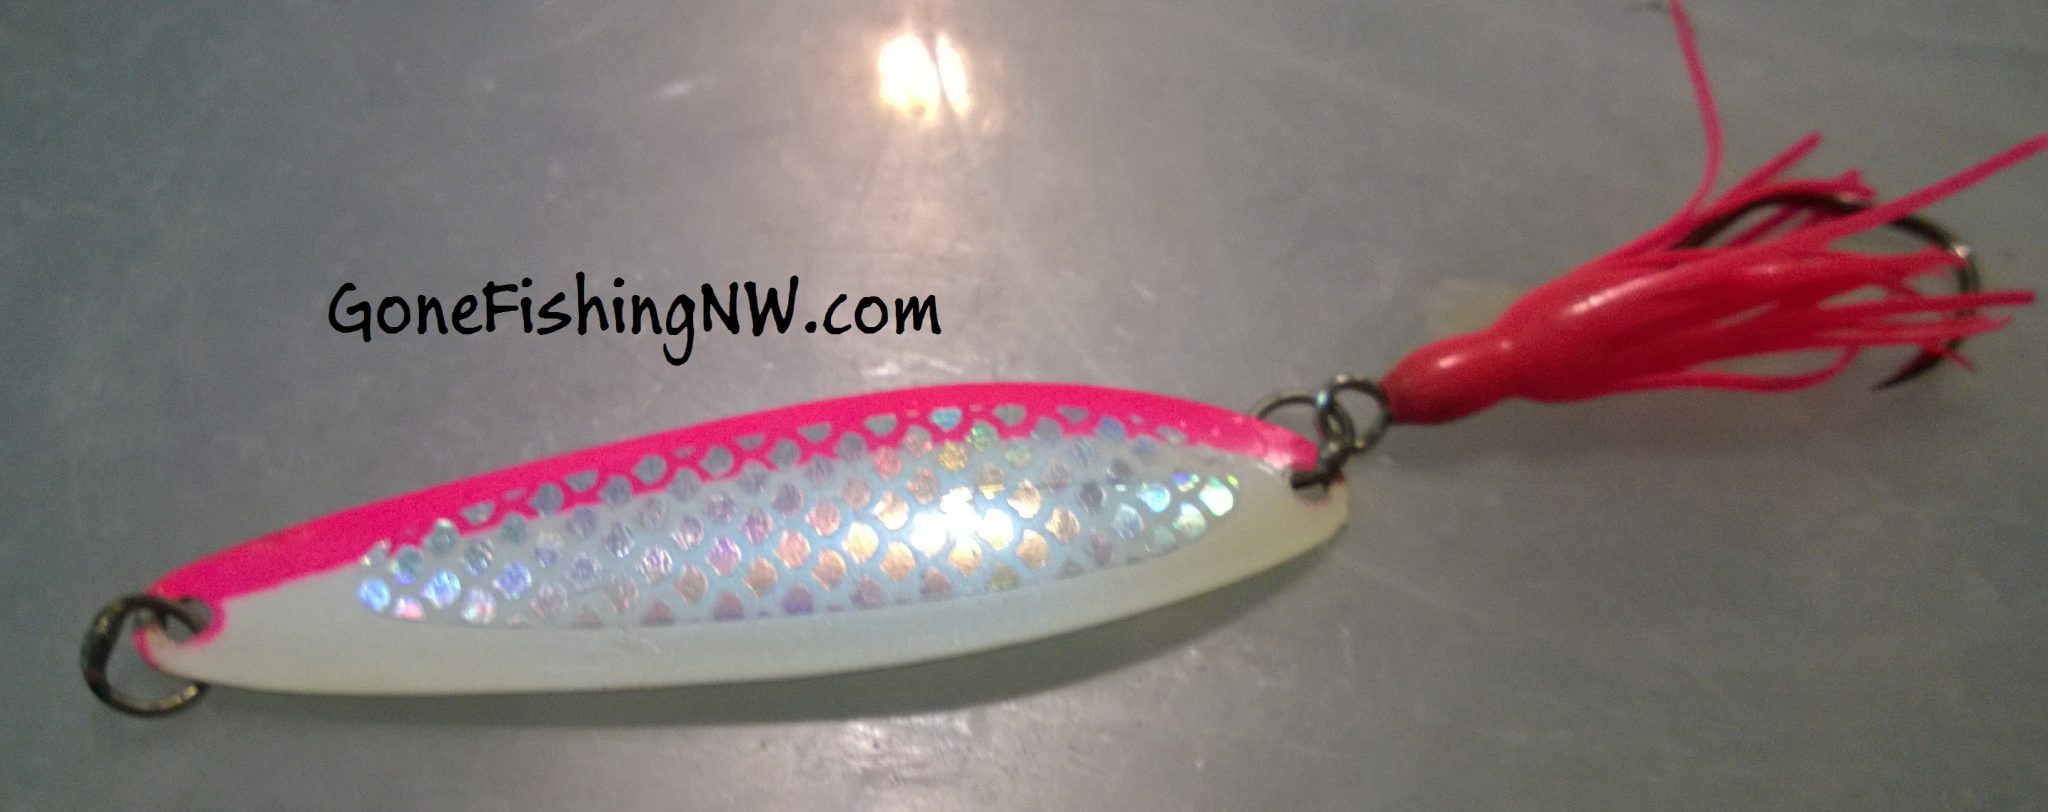 http://gonefishingnw.com/wp-content/uploads/2015/08/Pink-Salmon-Spoon.jpg